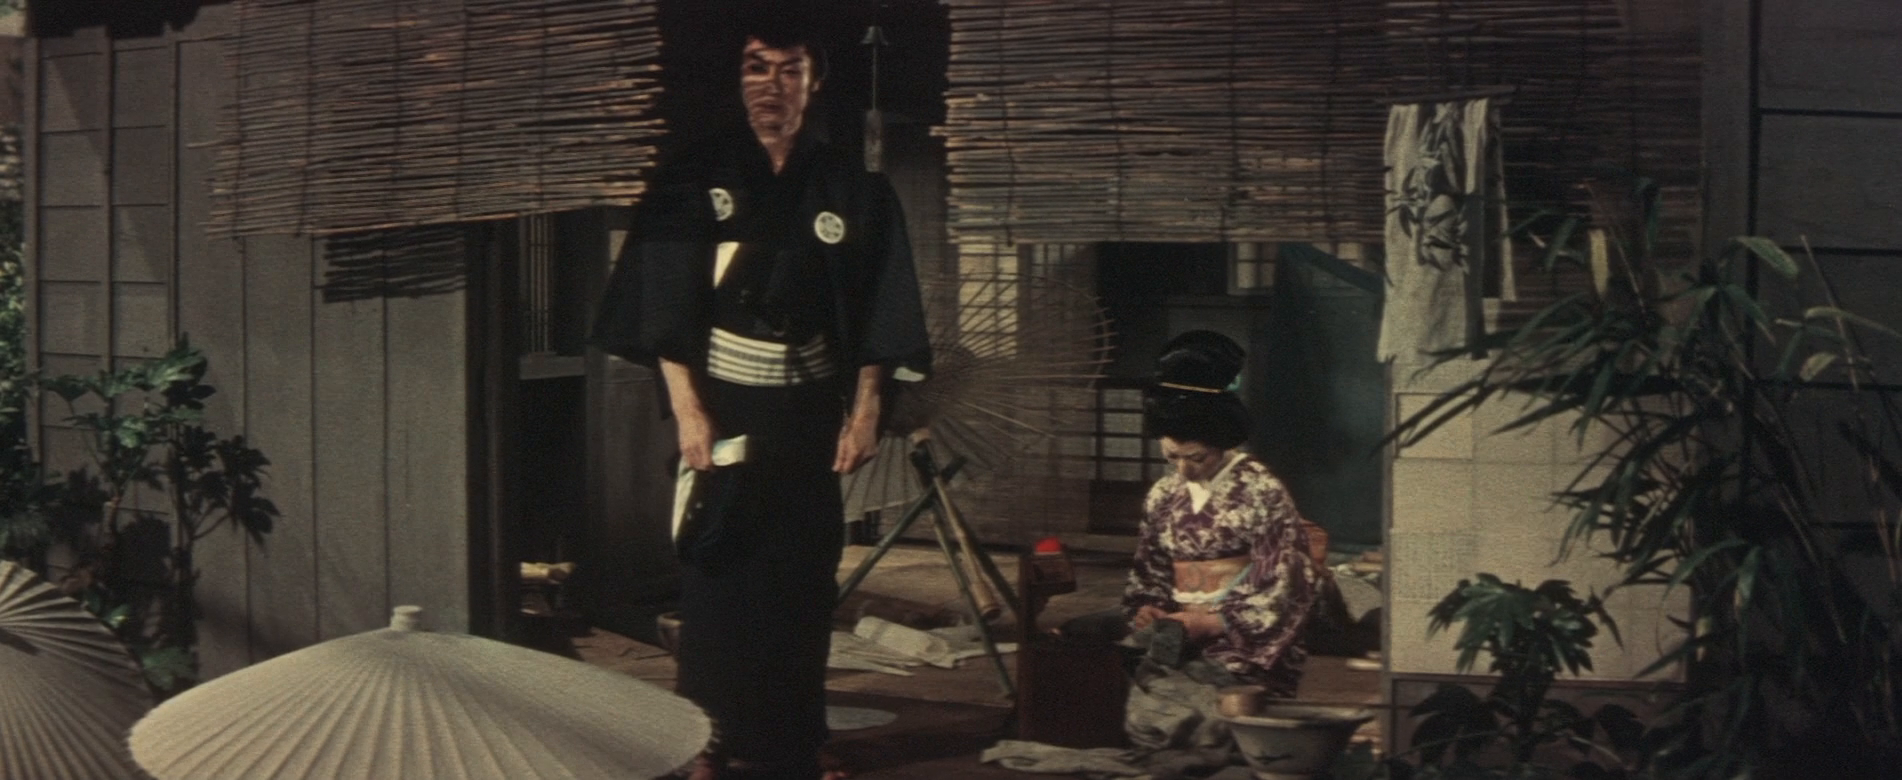 Ĺȹ̸ The.Ghost.Of.Yotsuya.1959.JAPANESE.1080p.BluRay.x264-HANDJOB 6.37GB-4.png